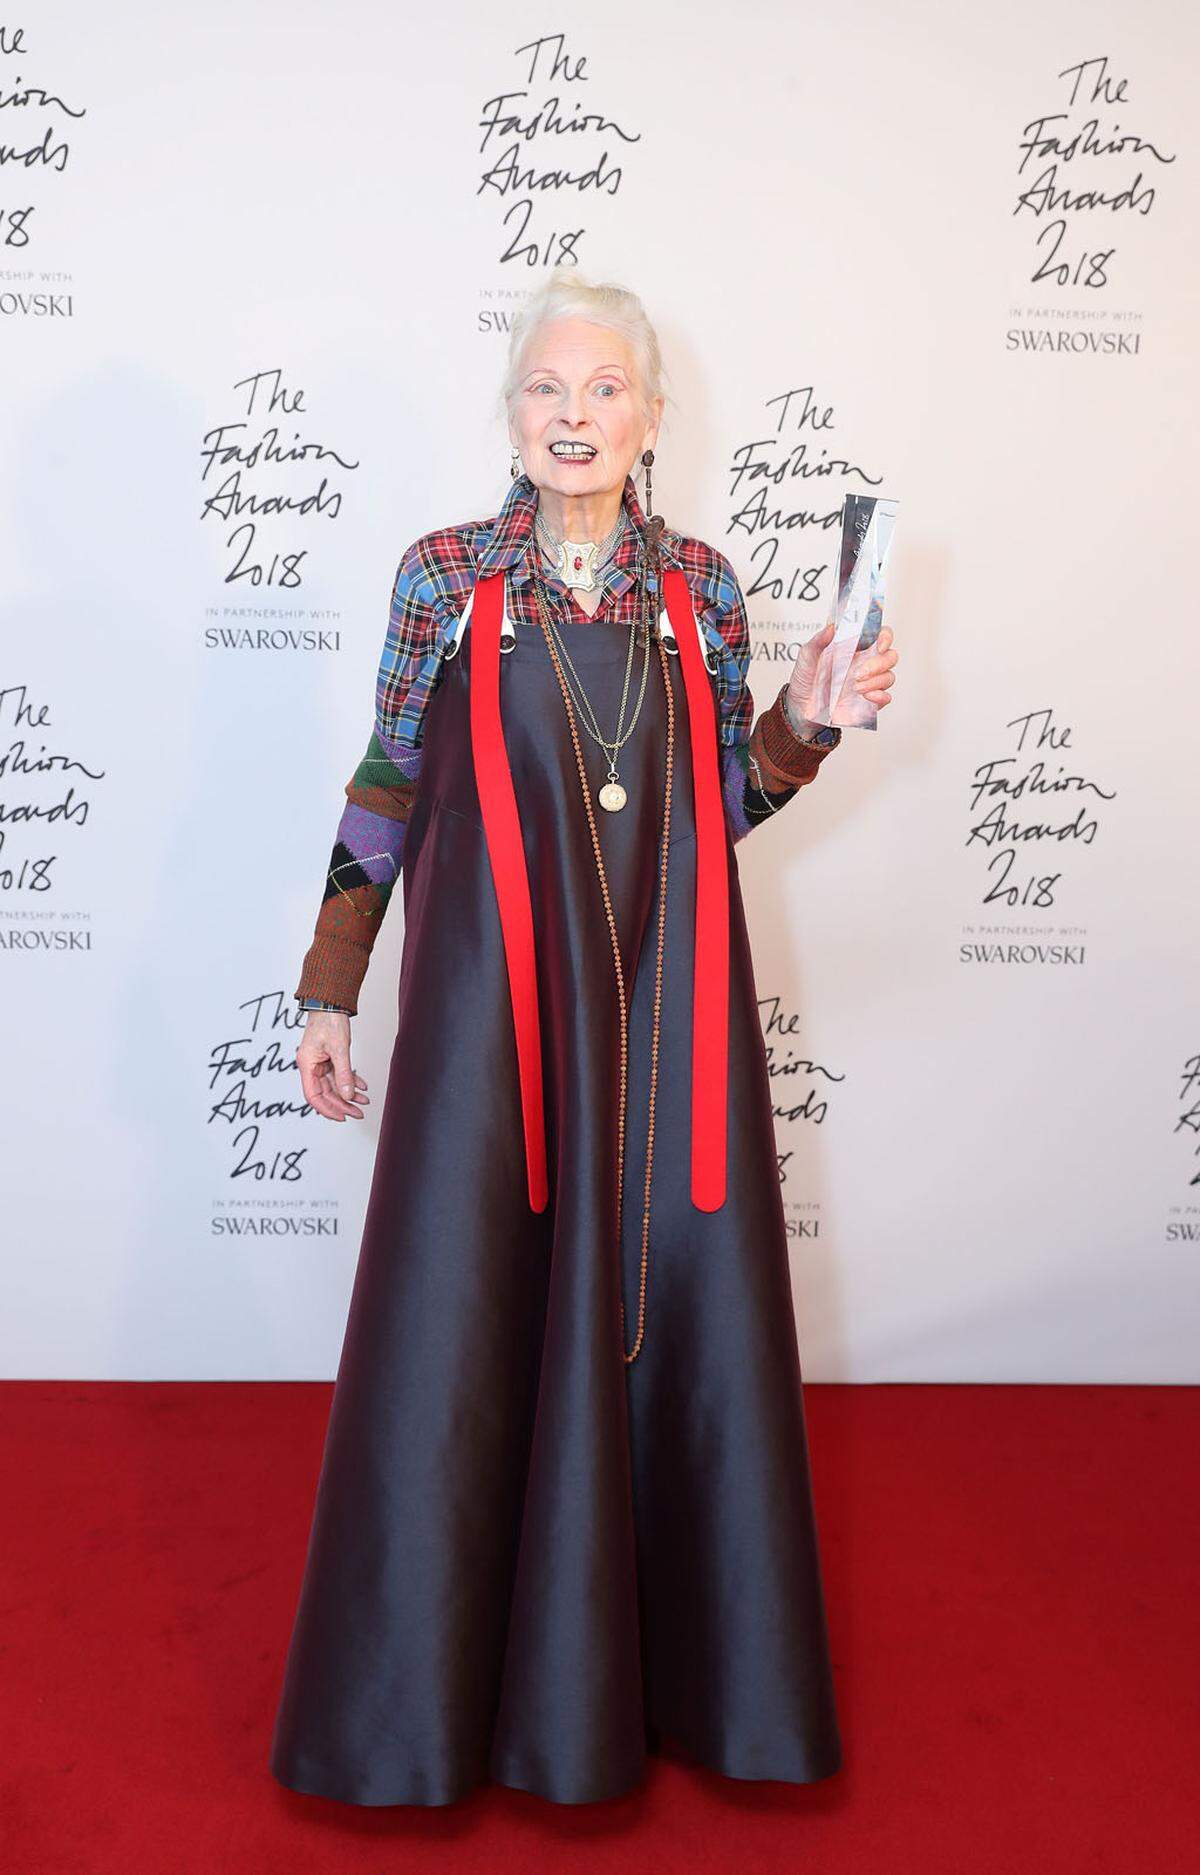 Unter den 400= Gästen war auch Vivienne Westwood. Die Designerin wurde für ihr soziales und ökologisches Engagement mit dem Swarovski Award für "Positive Change" ausgezeichnet.